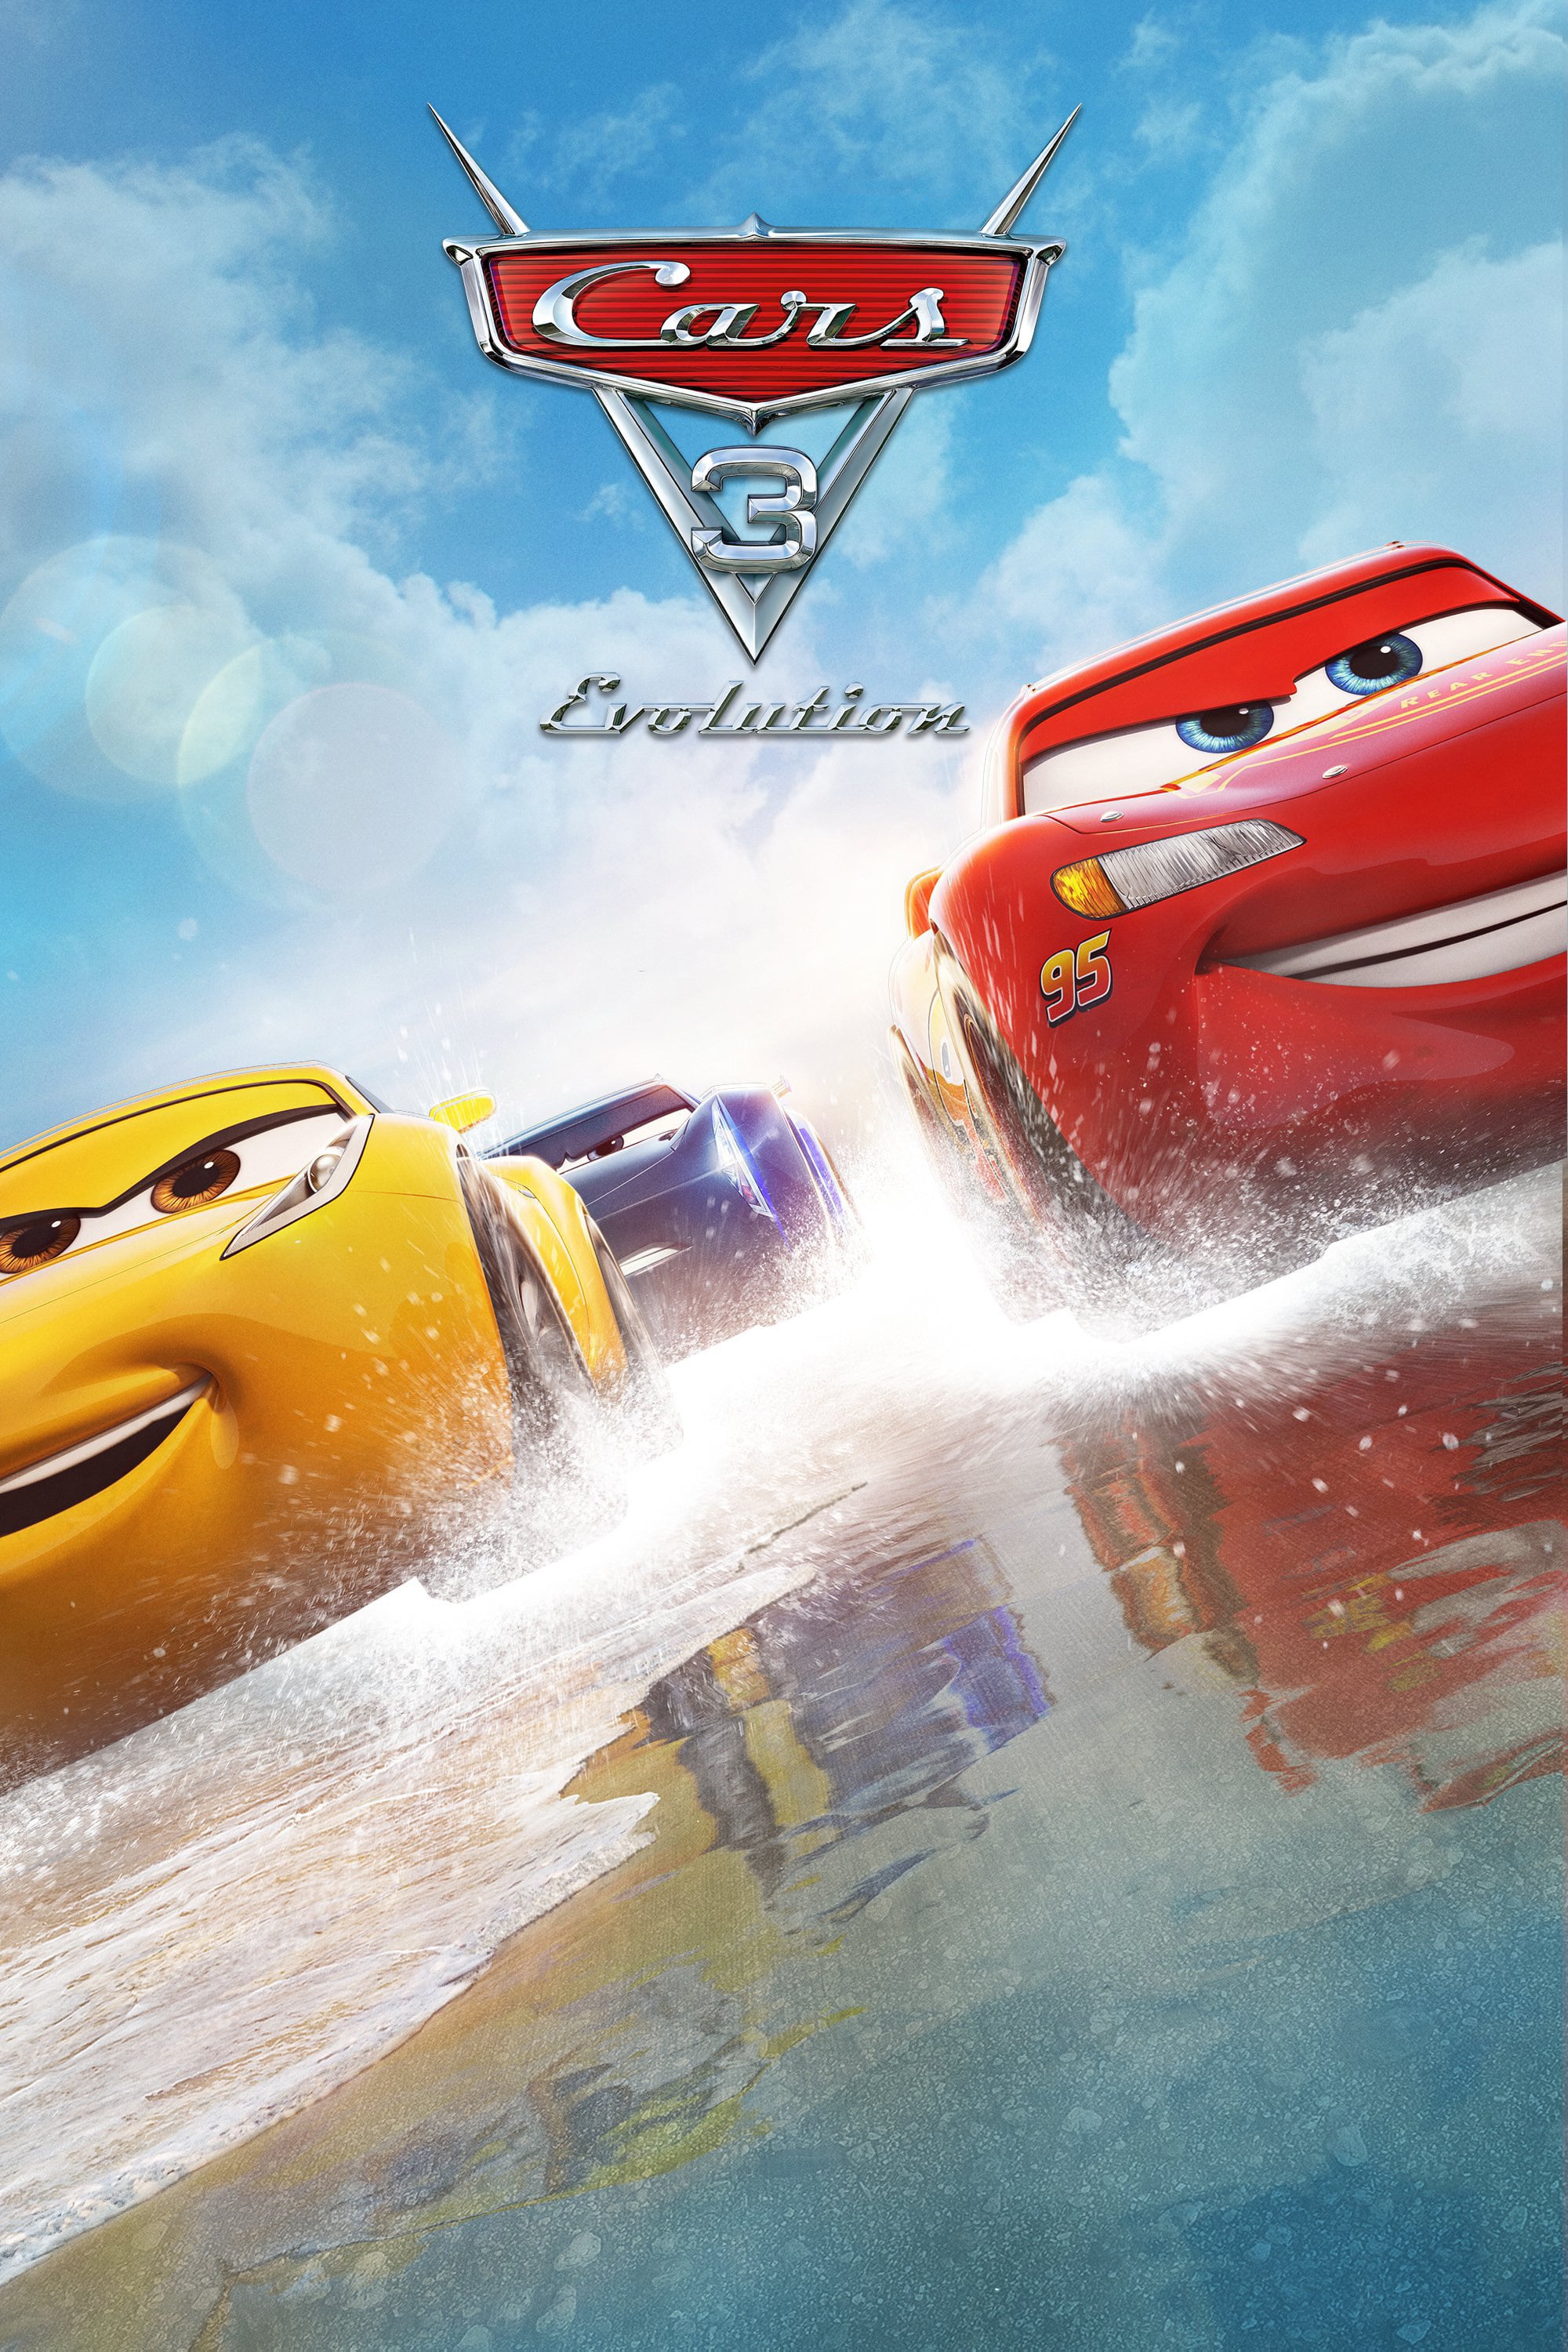 Plakat von "Cars 3: Evolution"